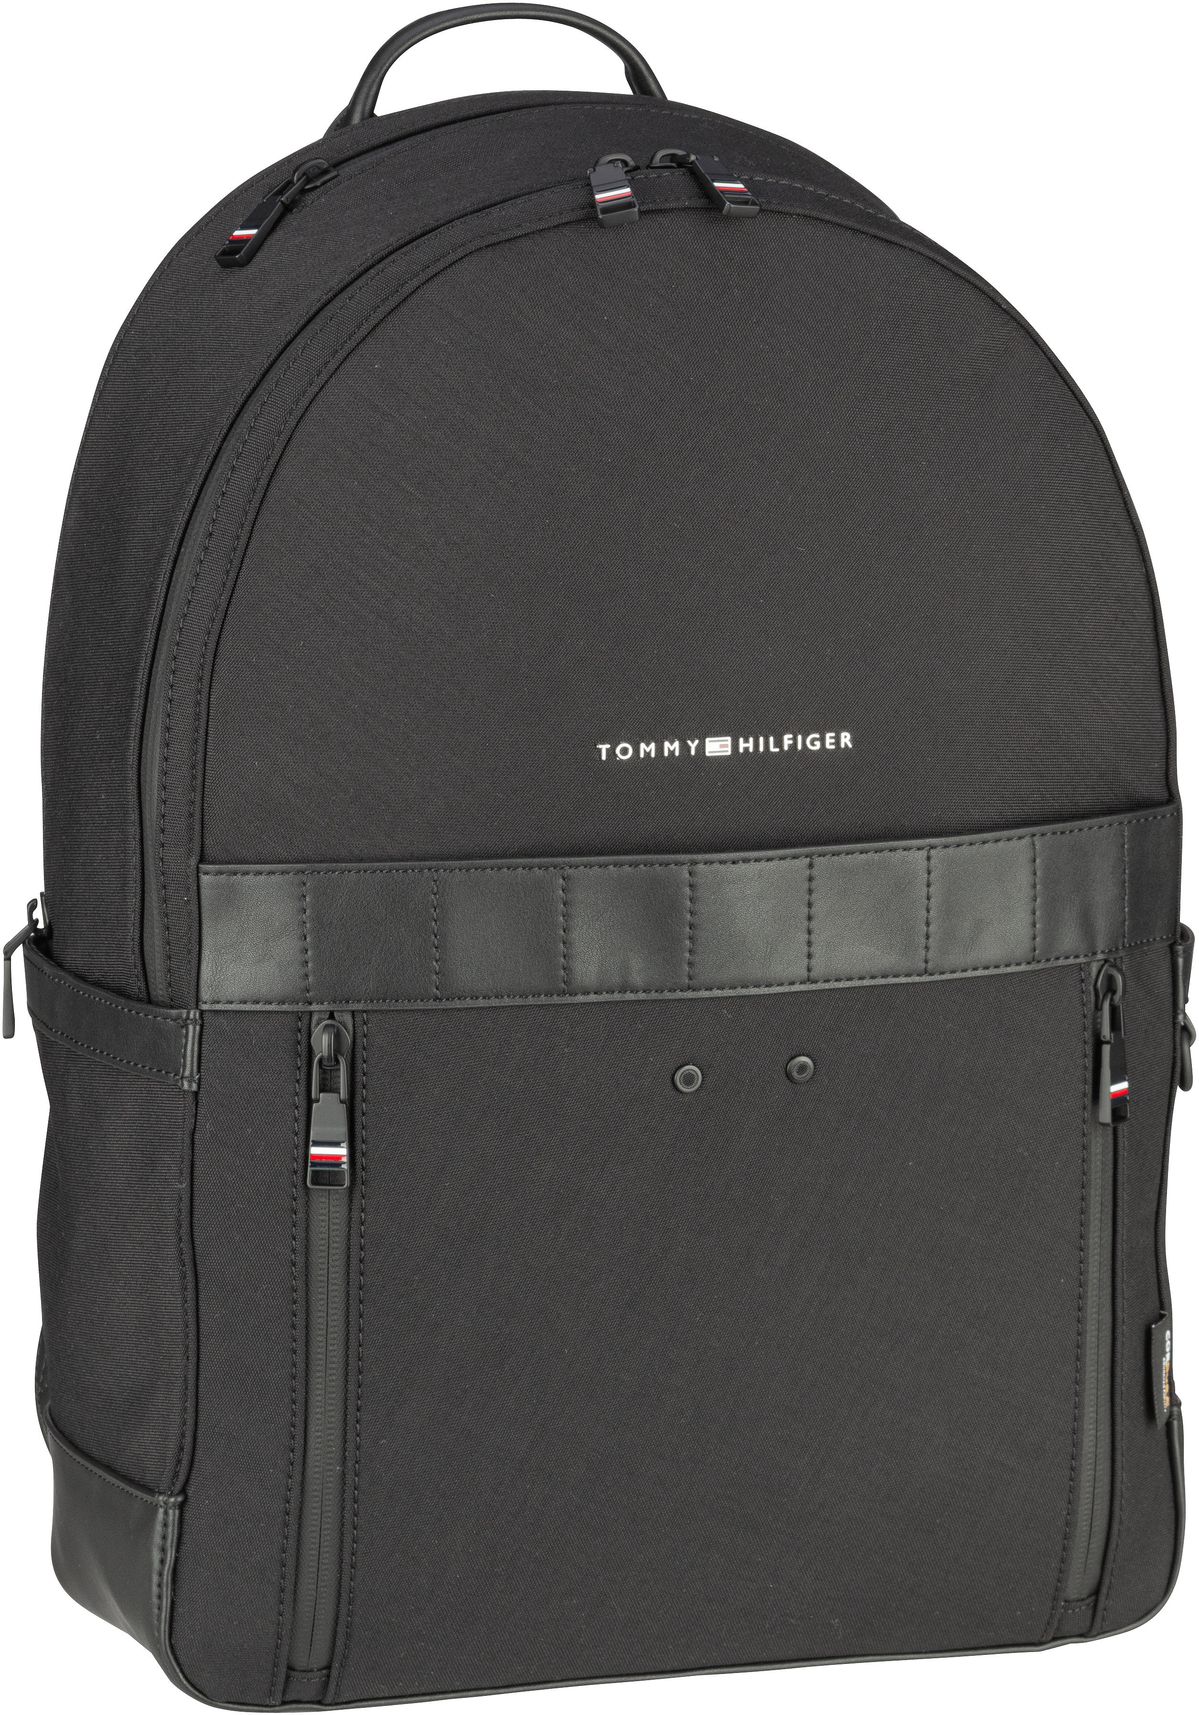 tommy hilfiger -  Rucksack / Daypack TH Elevated 1985 Backpack SP23 Black (18.5 Liter)